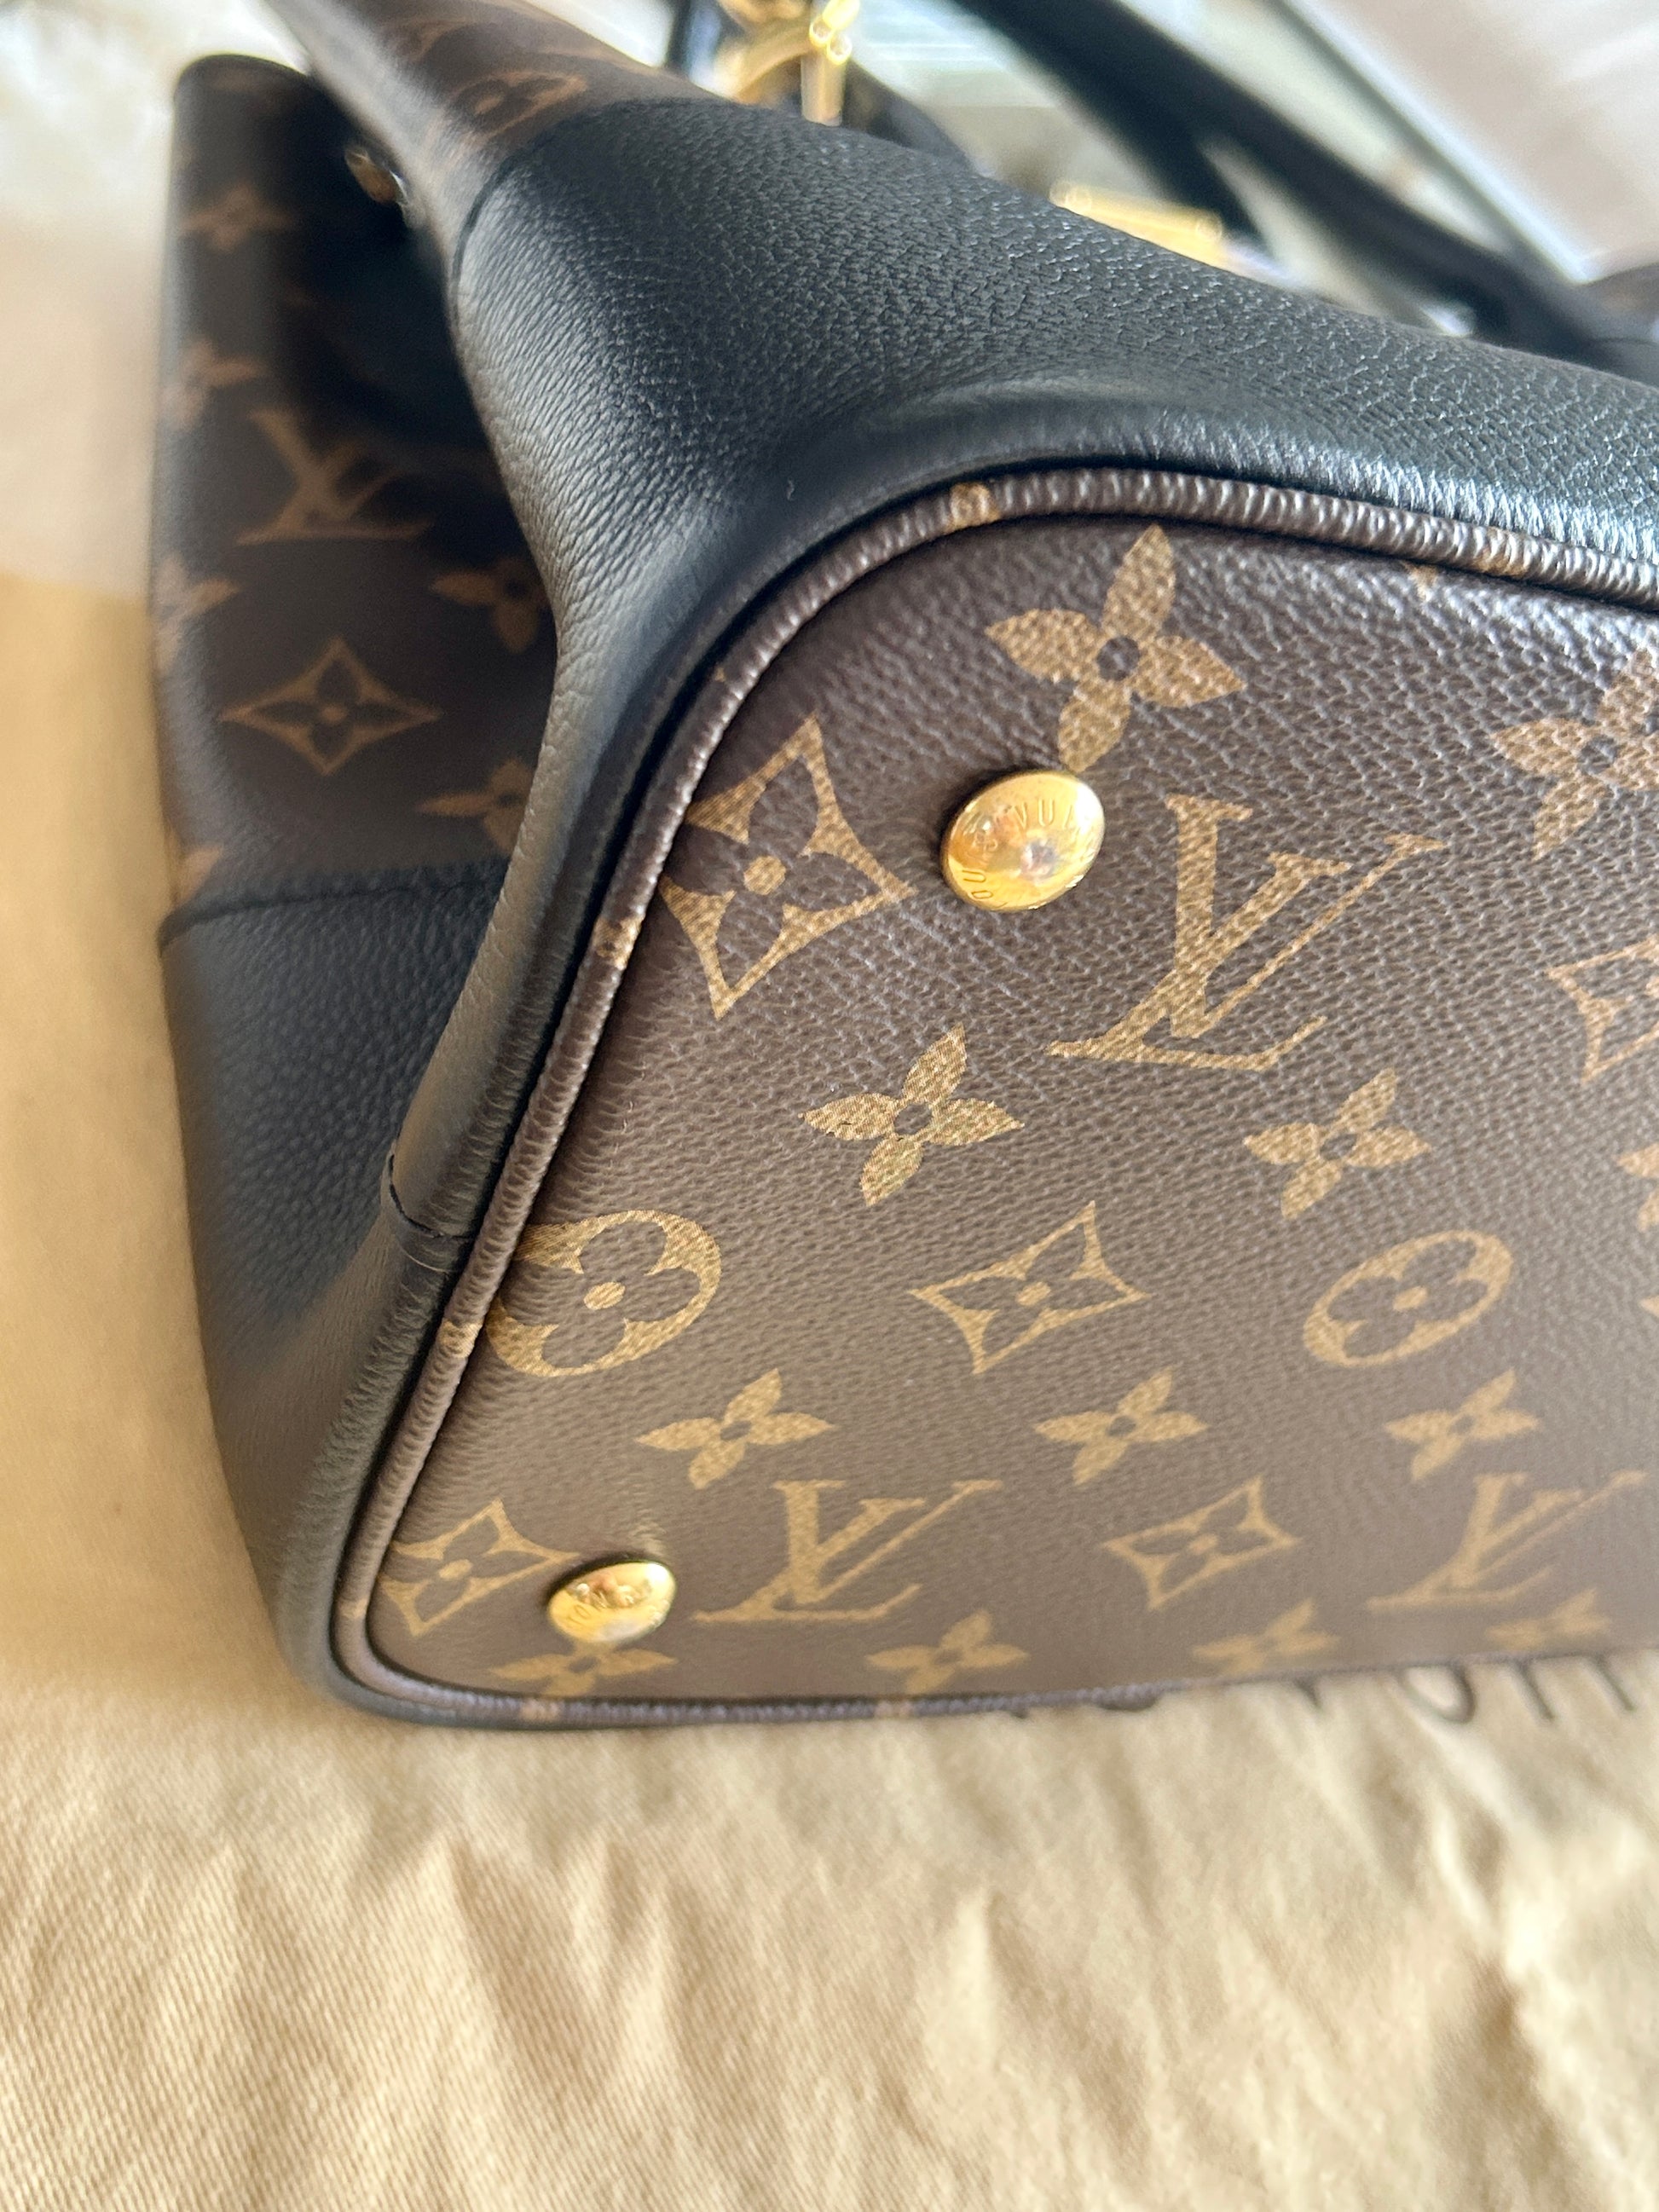 Louis Vuitton Flandrin 2 Way Handbag & Shoulder Bag